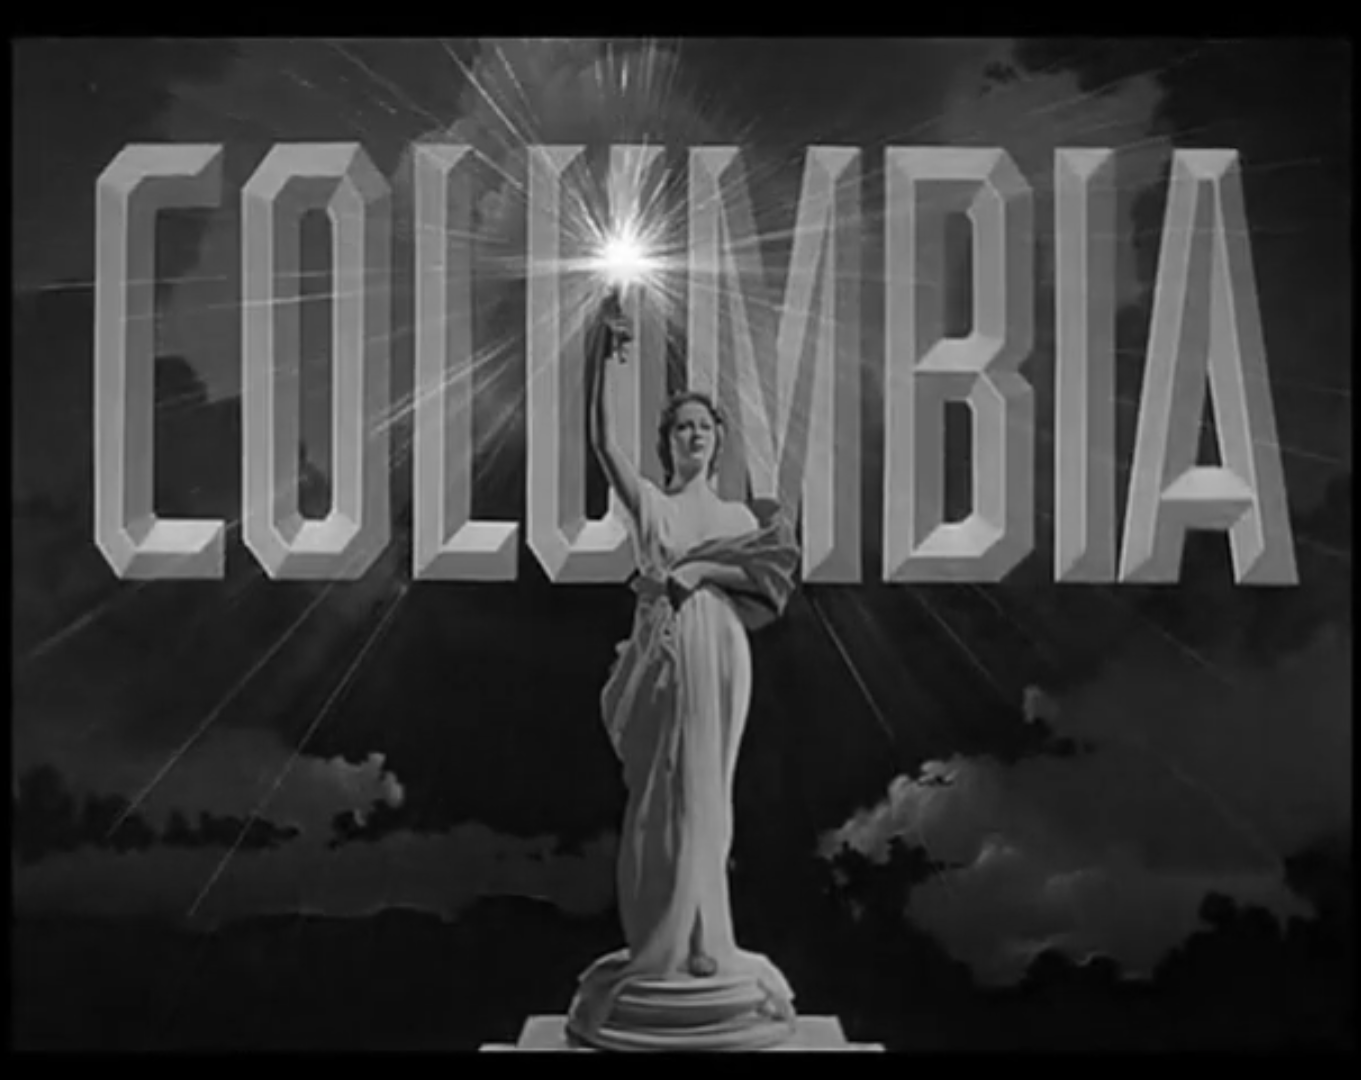 Колумбия пикчерз. Кинокомпания коламбия Пикчерз. Columbia pictures 1924. Коламбия киностудия. Логотип компании коламбия Пикчерз.